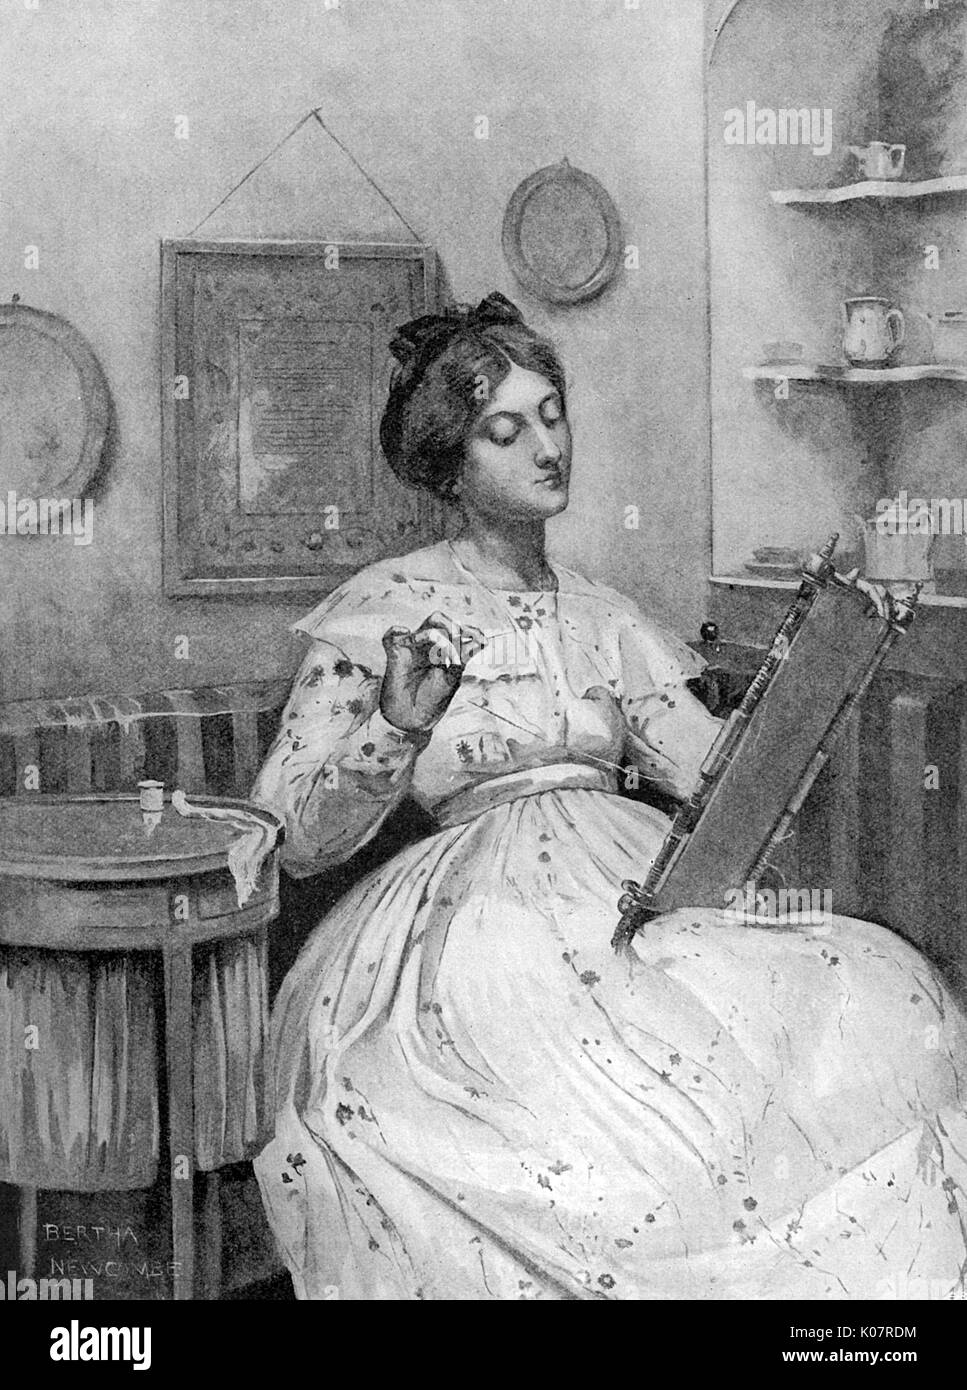 Une jeune femme victorienne à l'aide d'un cadre de broderie, une boîte de couture à côté d'elle et un exemple de son travail, sous la forme d'un échantillonneur, vu sur le mur derrière elle. Date : 1905 Banque D'Images